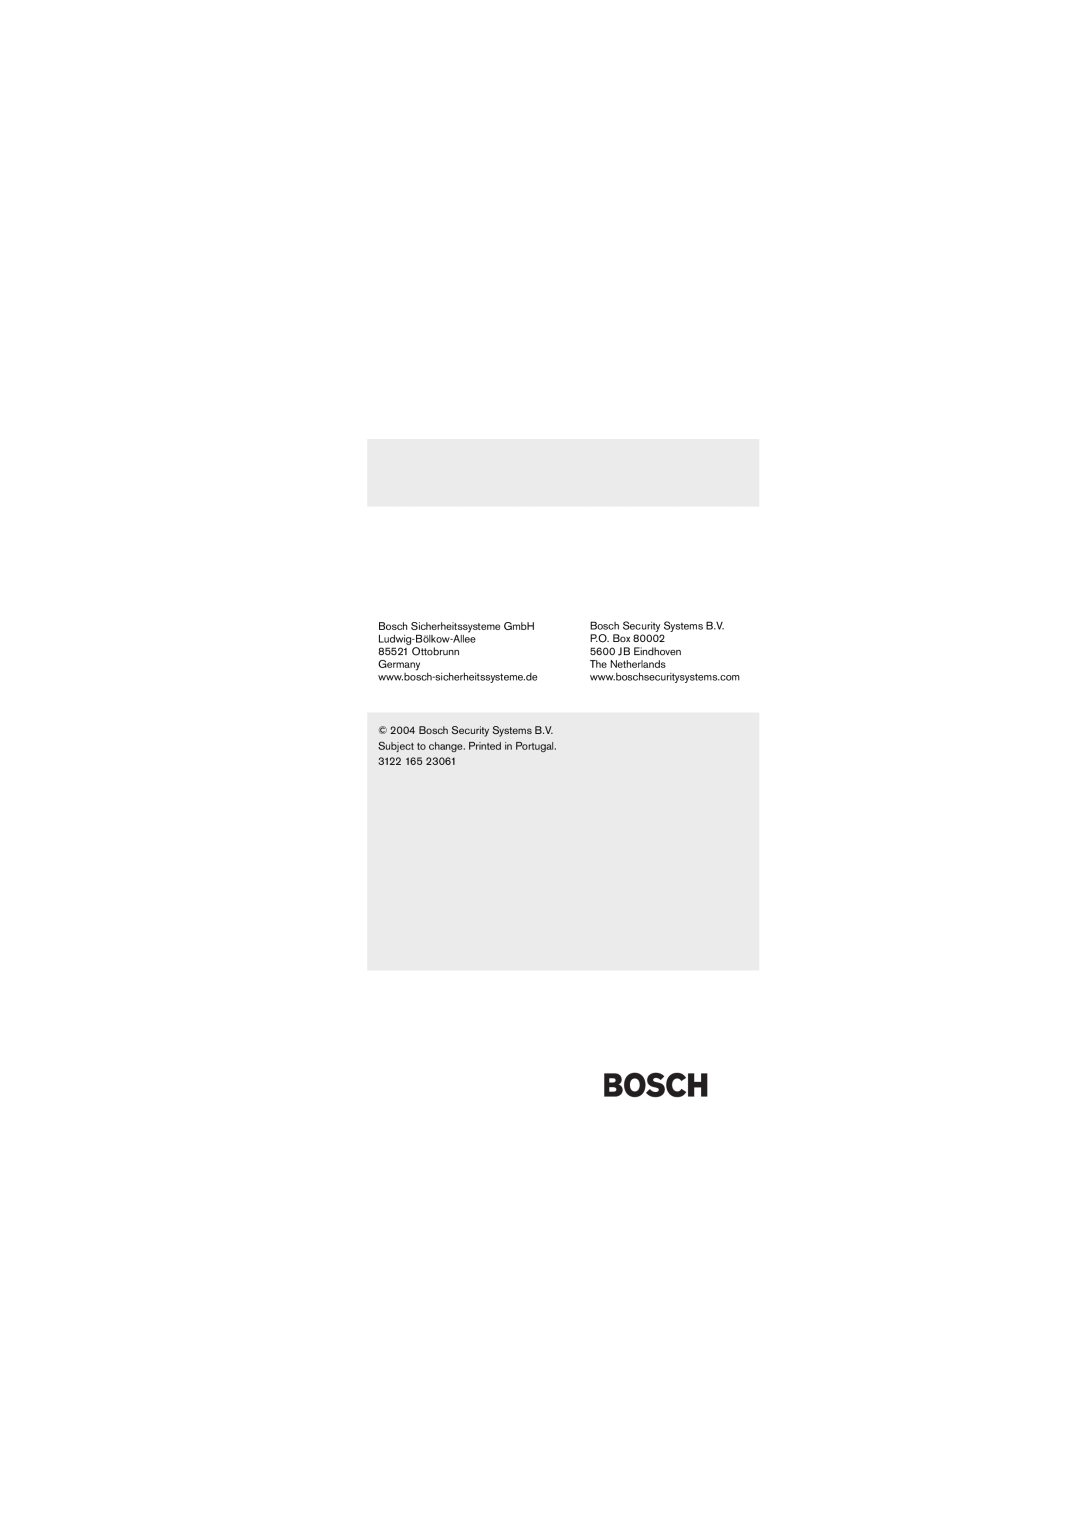 Bosch Appliances LTC 0620 Bosch Sicherheitssysteme GmbH, Bosch Security Systems B.V, Ludwig-Bölkow-Allee, P.O. Box 